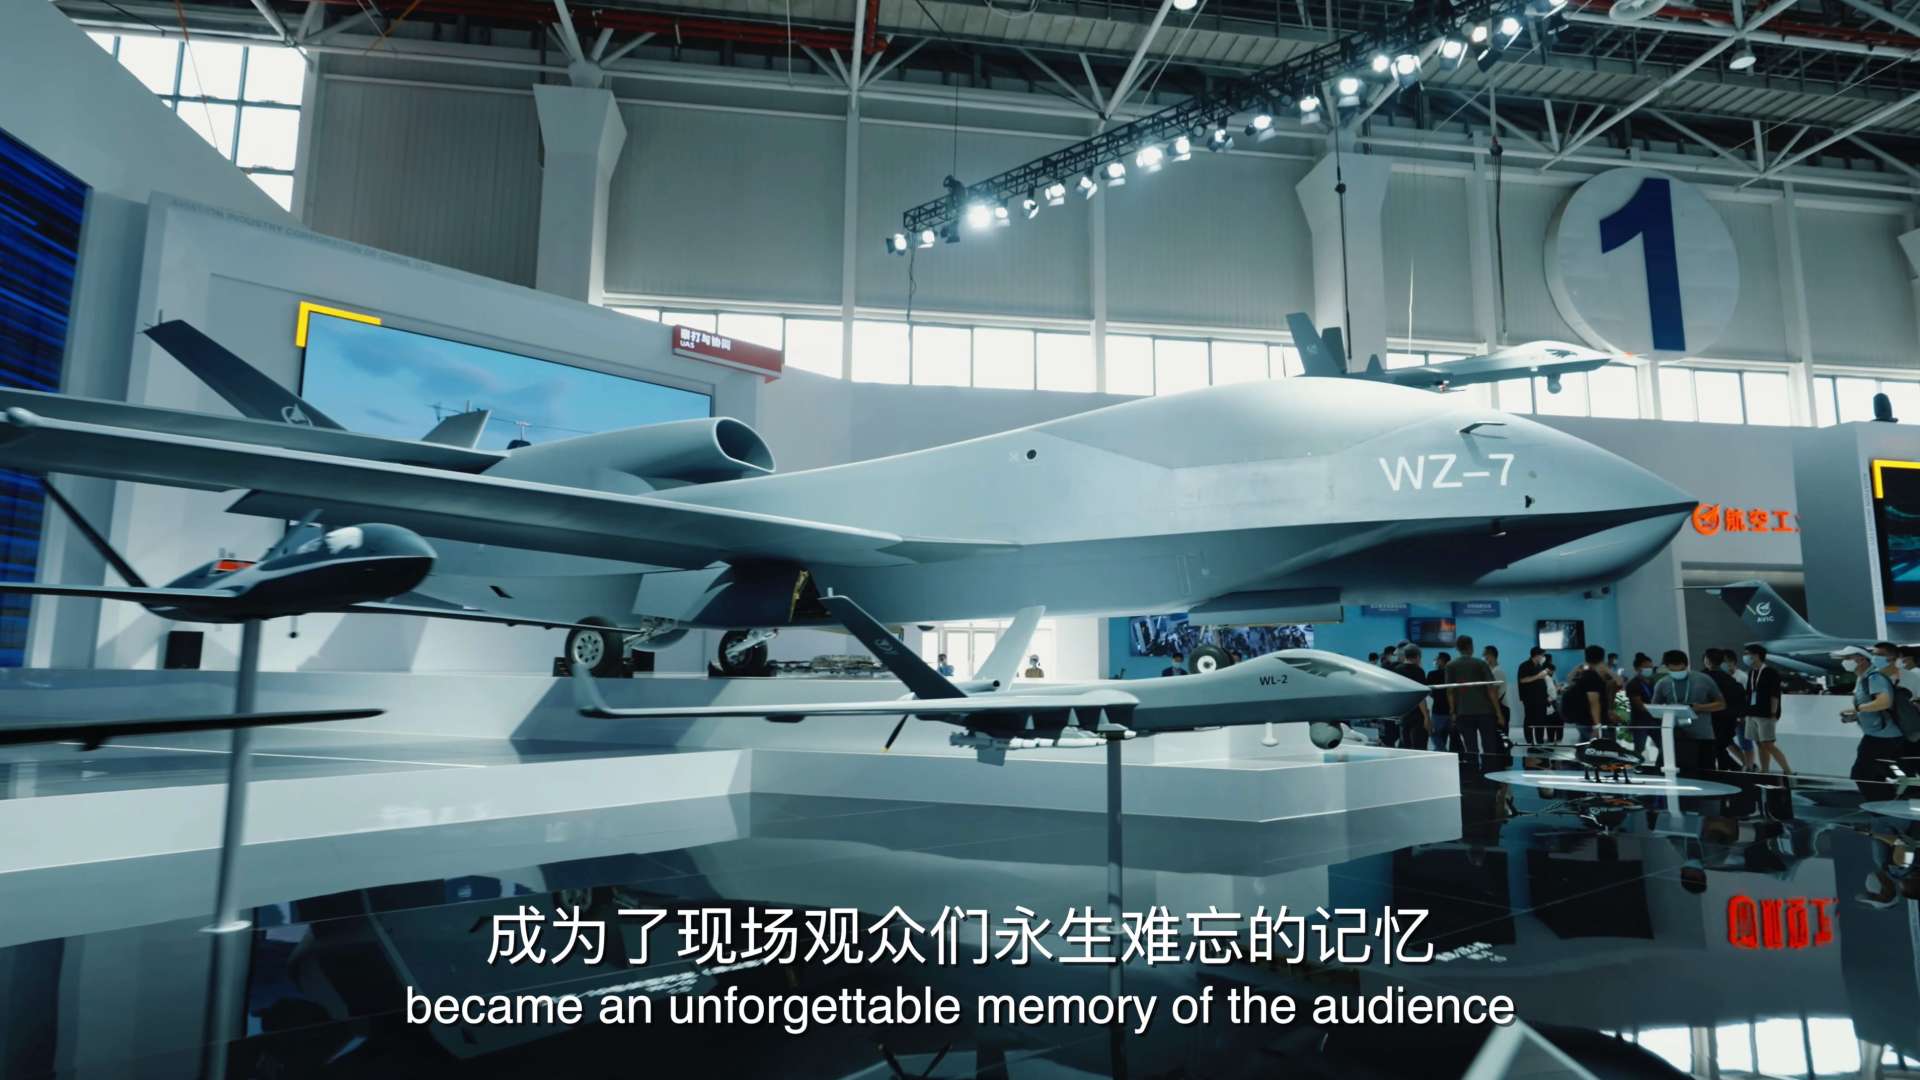 中国新华新闻电视网&中国航空工业集团《礼赞蓝天》纪录片